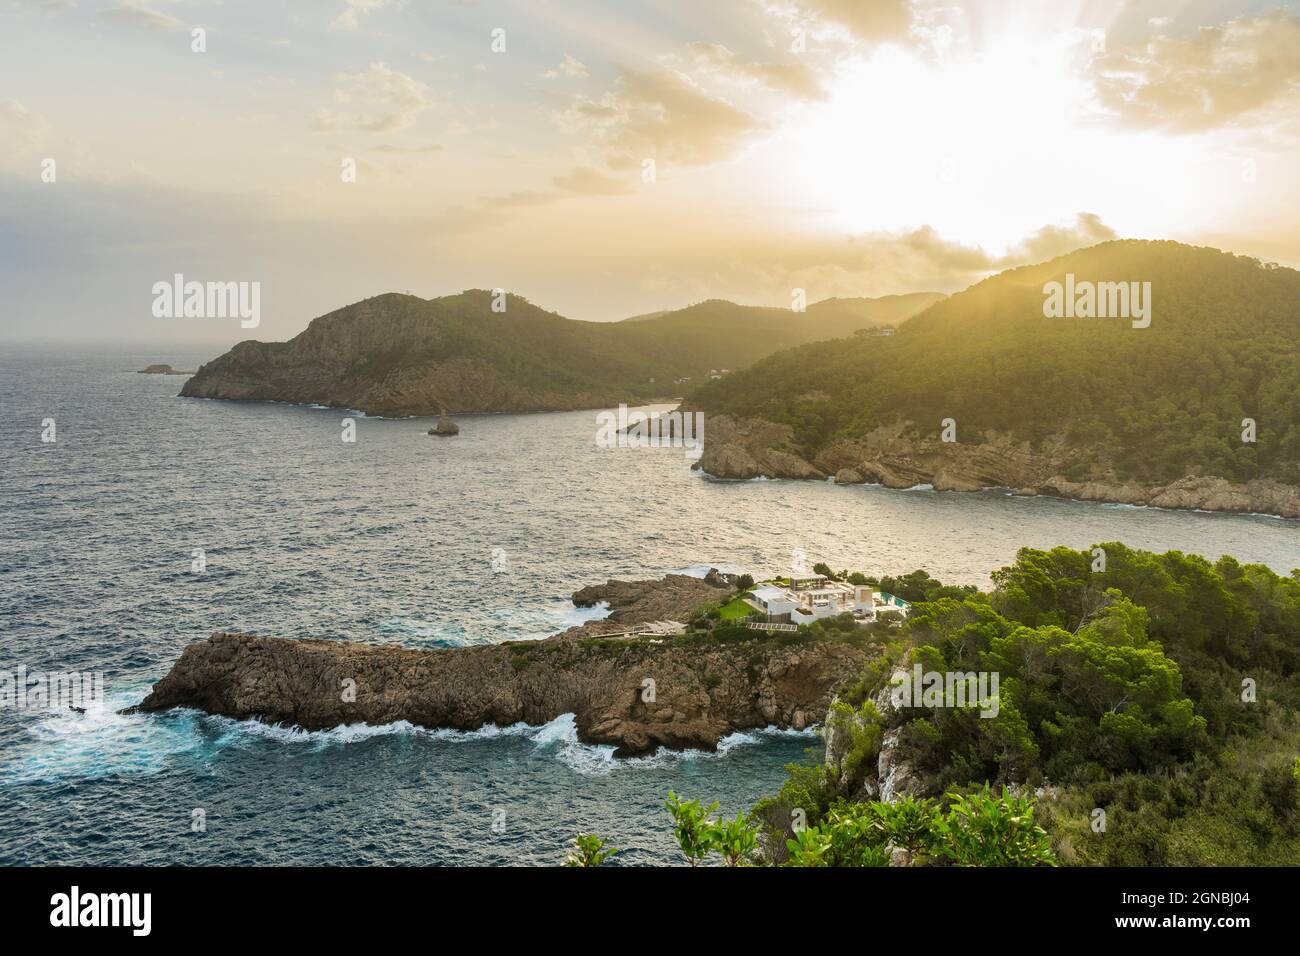 Baie de Saint Michael et vue panoramique de Benirras, Ibiza, Espagne Banque D'Images